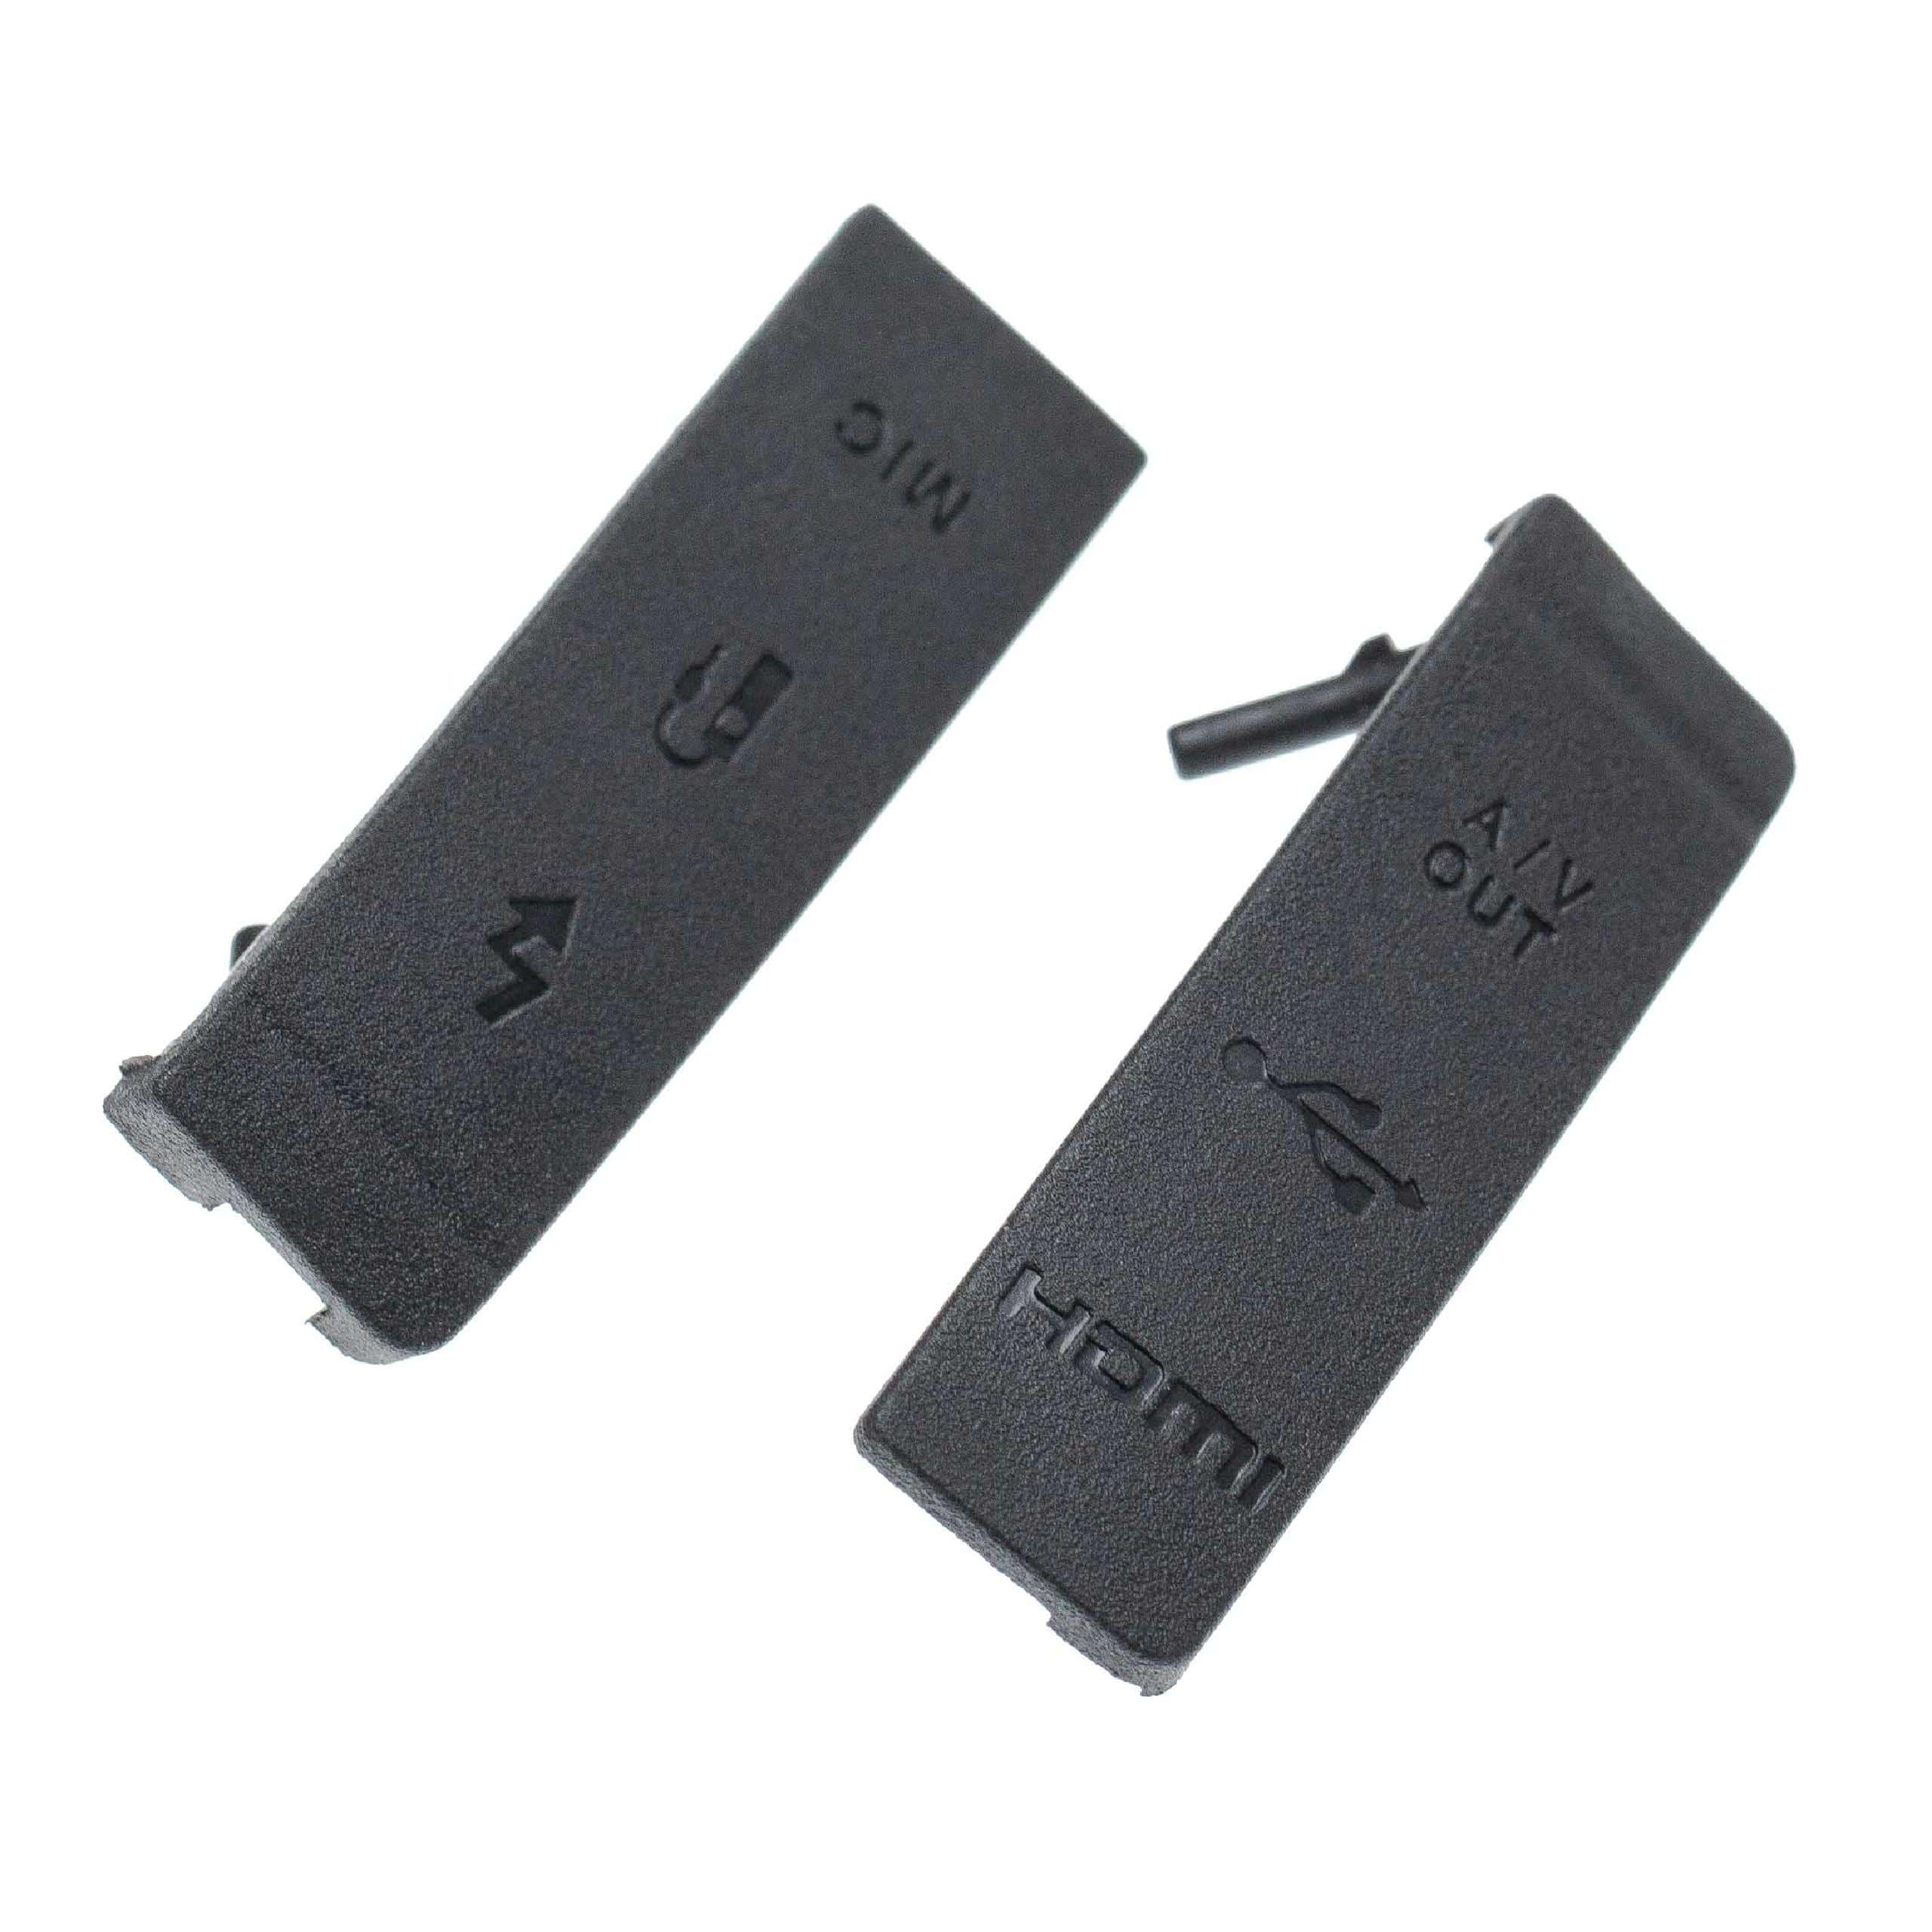 2x Cache-connecteurs pour appareil photo Canon EOS 5D Mark II - Capuchons de rechange, gomme, noir